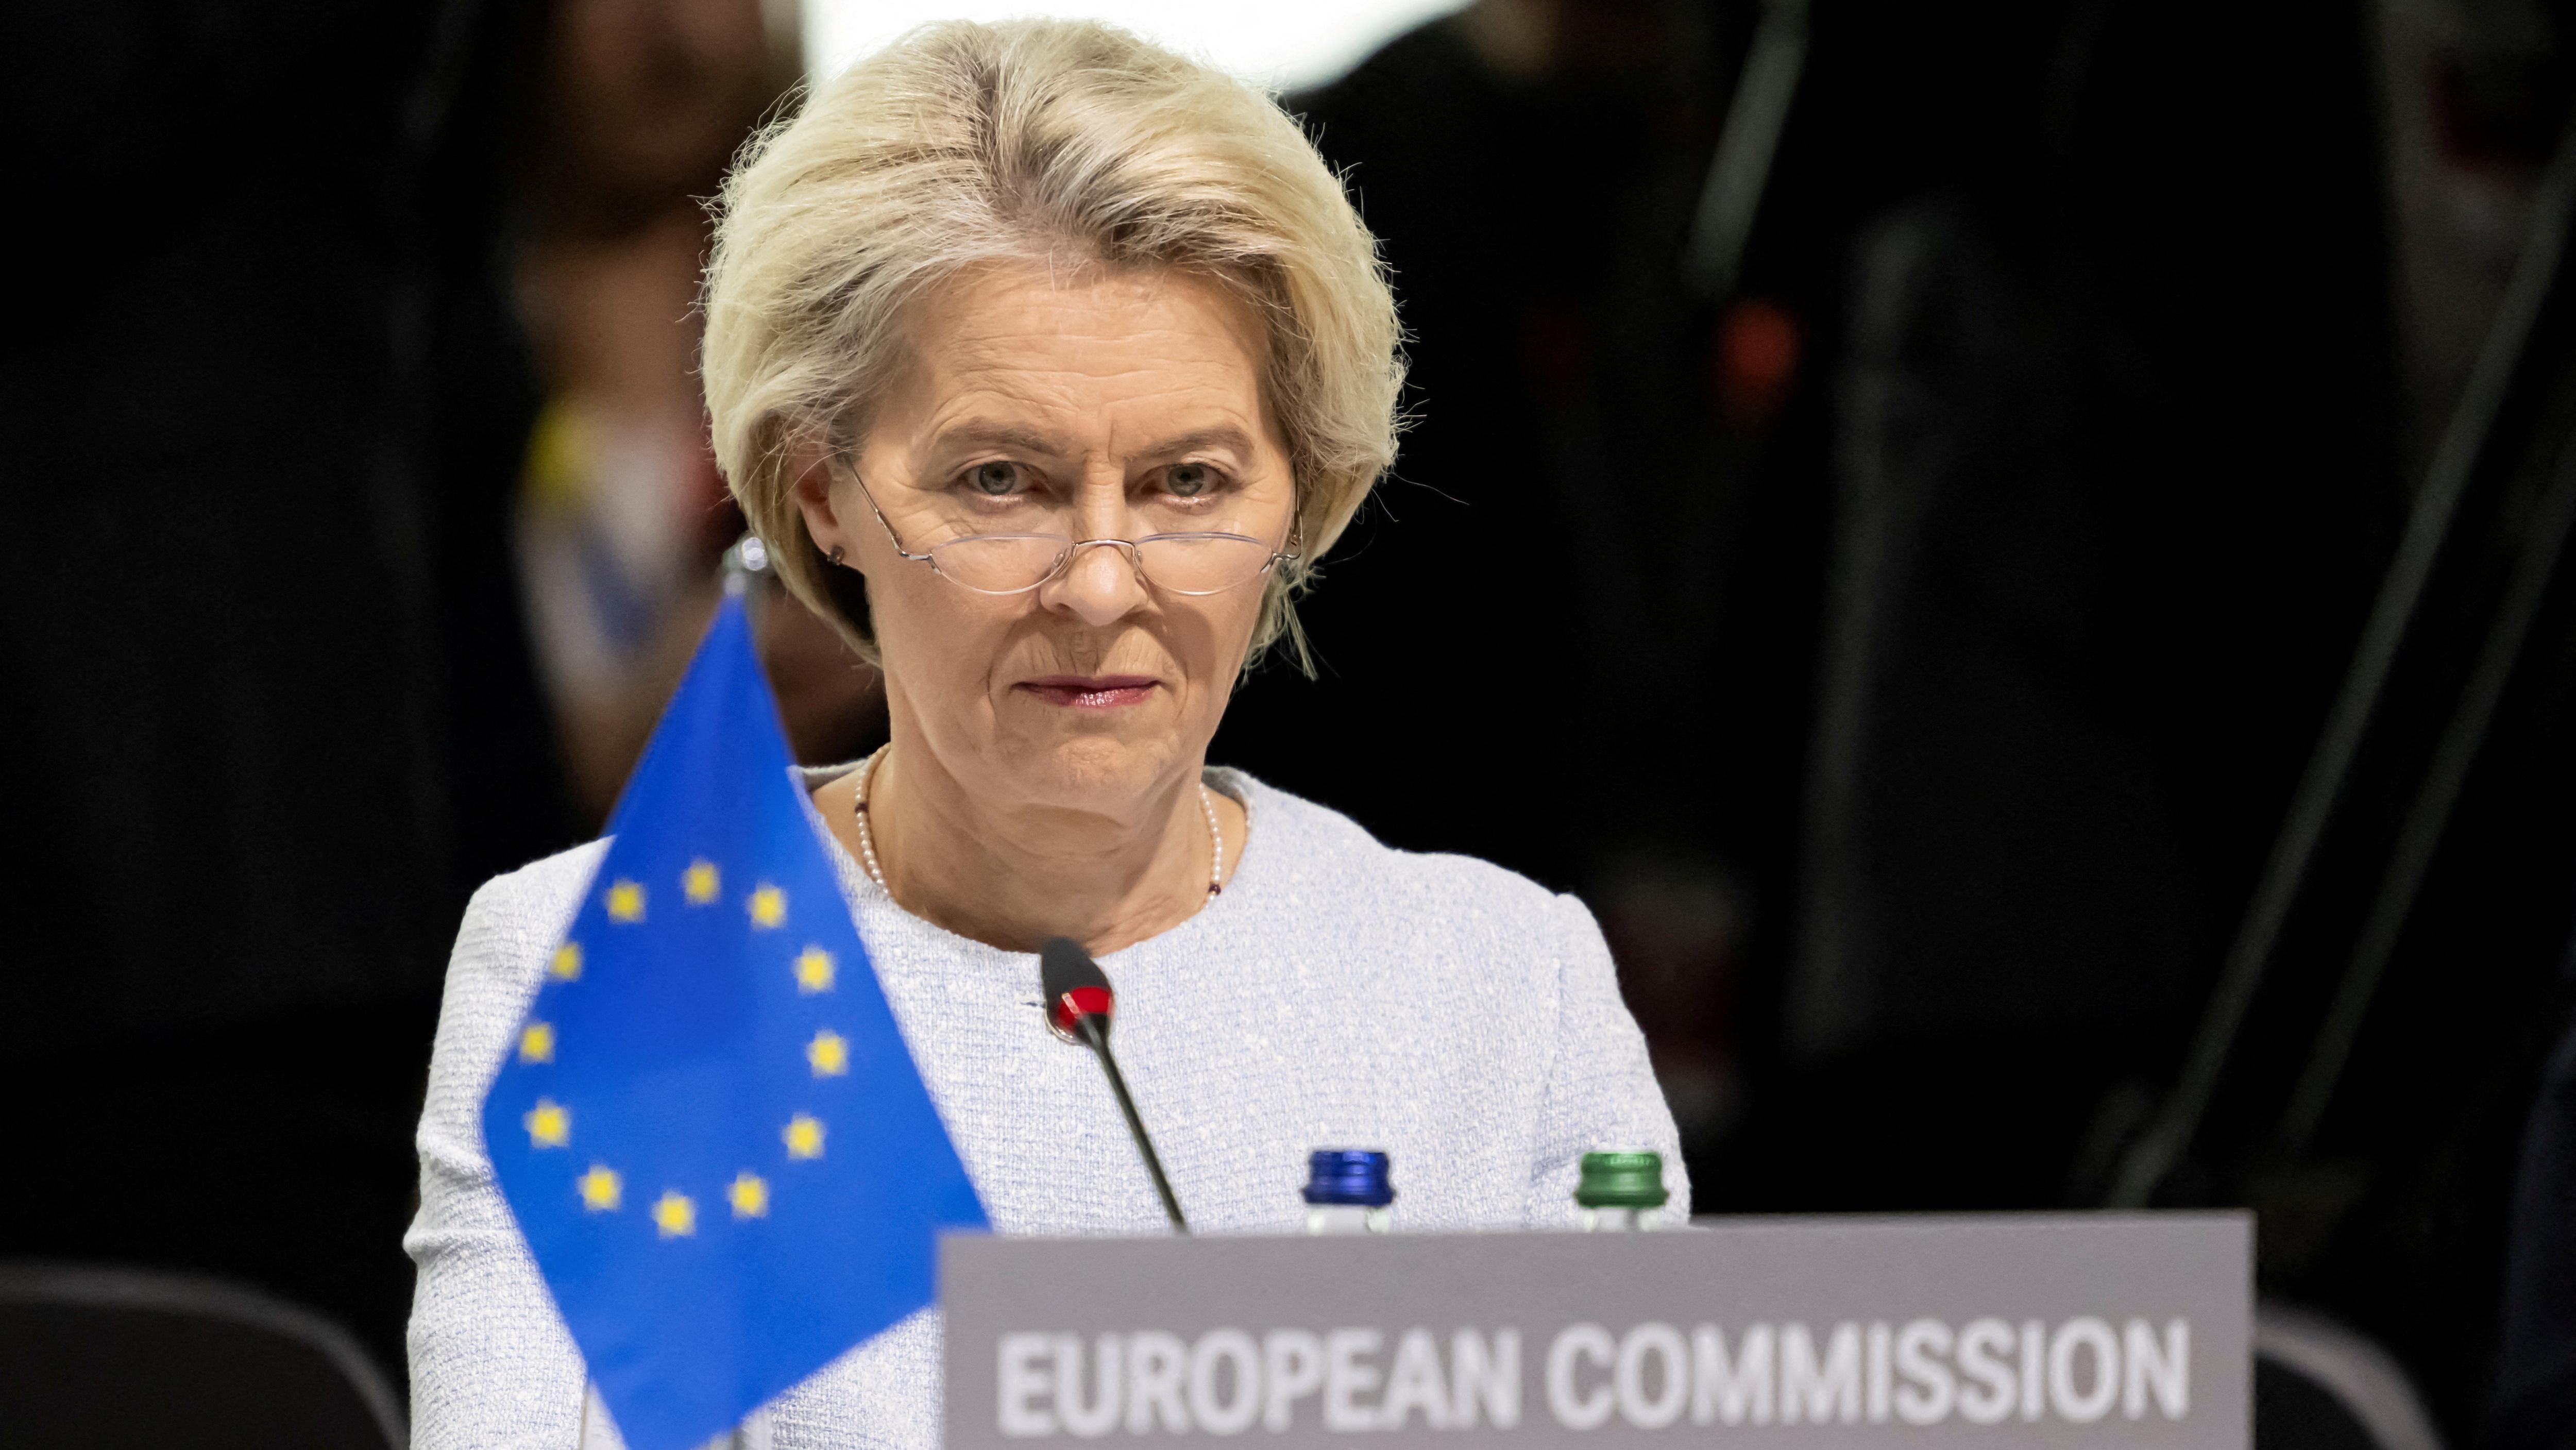 Ursula von der Leyen faces crunch vote on top Europe job